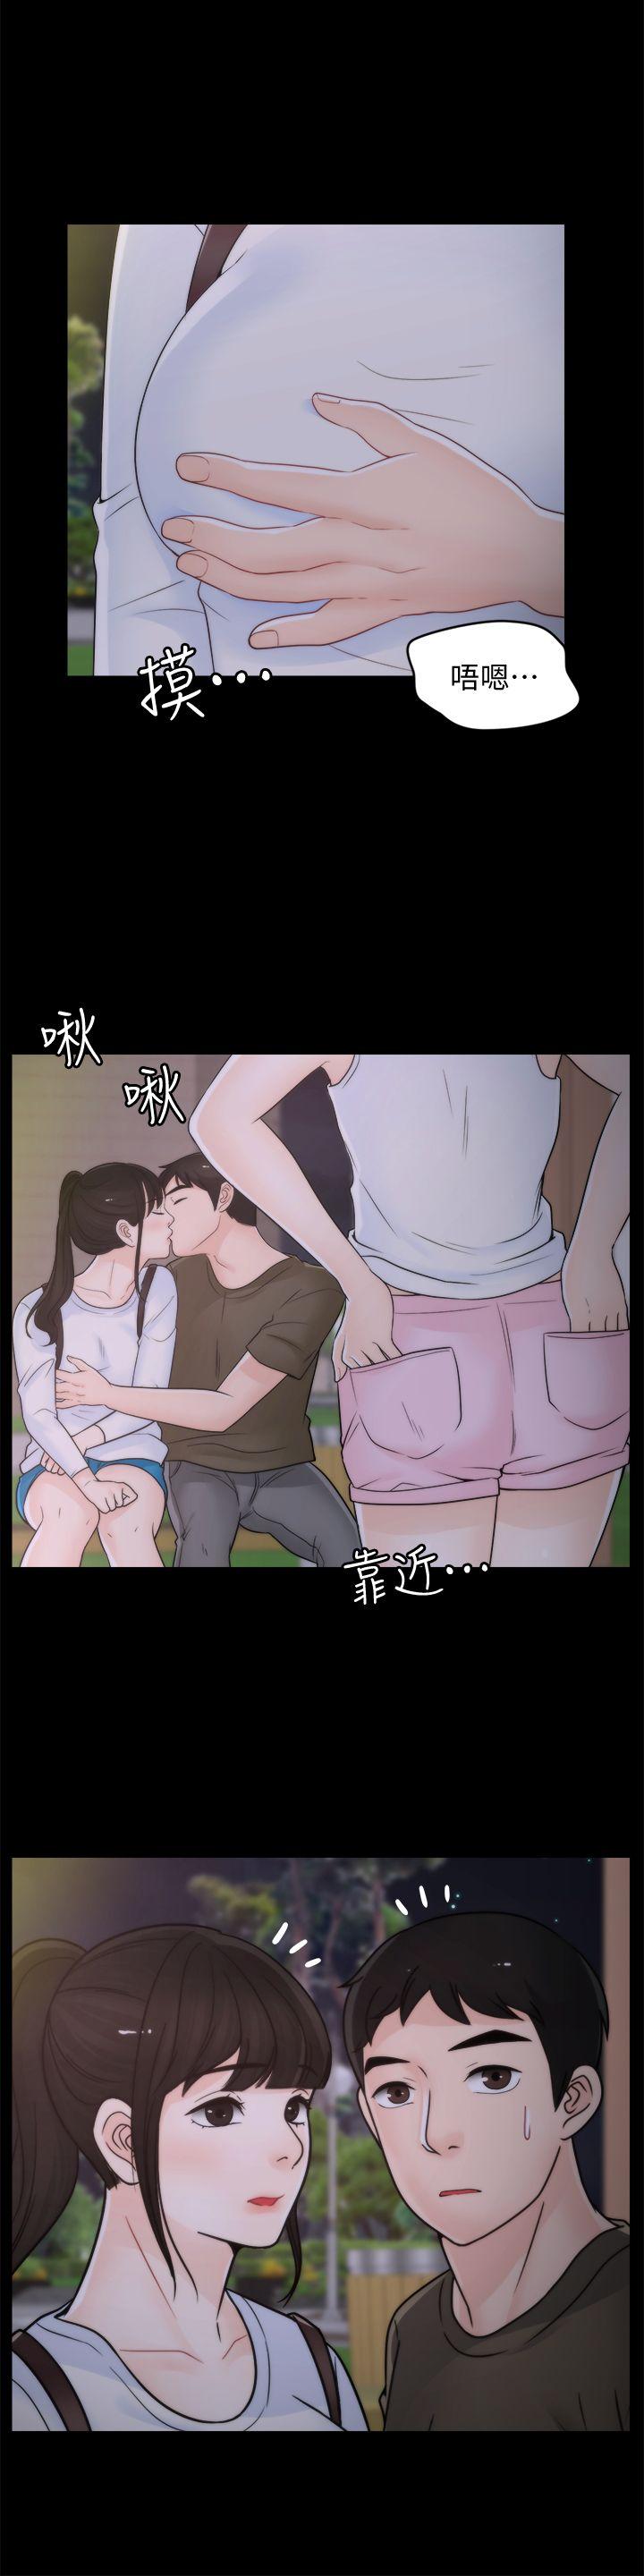 《偷偷爱》漫画 第41话-慧琳炽热的爱